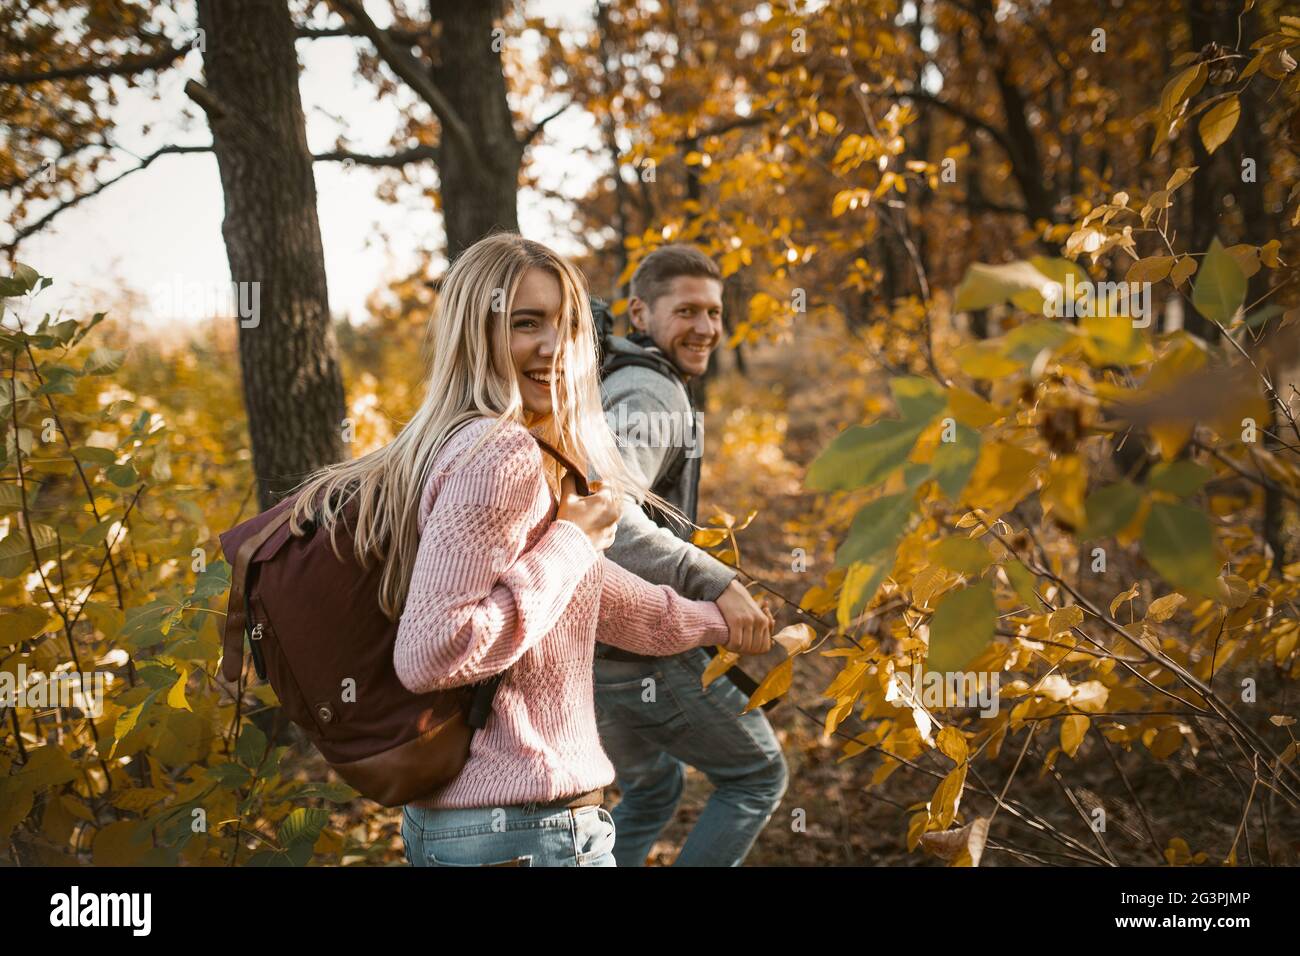 Randonnée de touristes avec sac à dos dans la forêt en plein air Banque D'Images